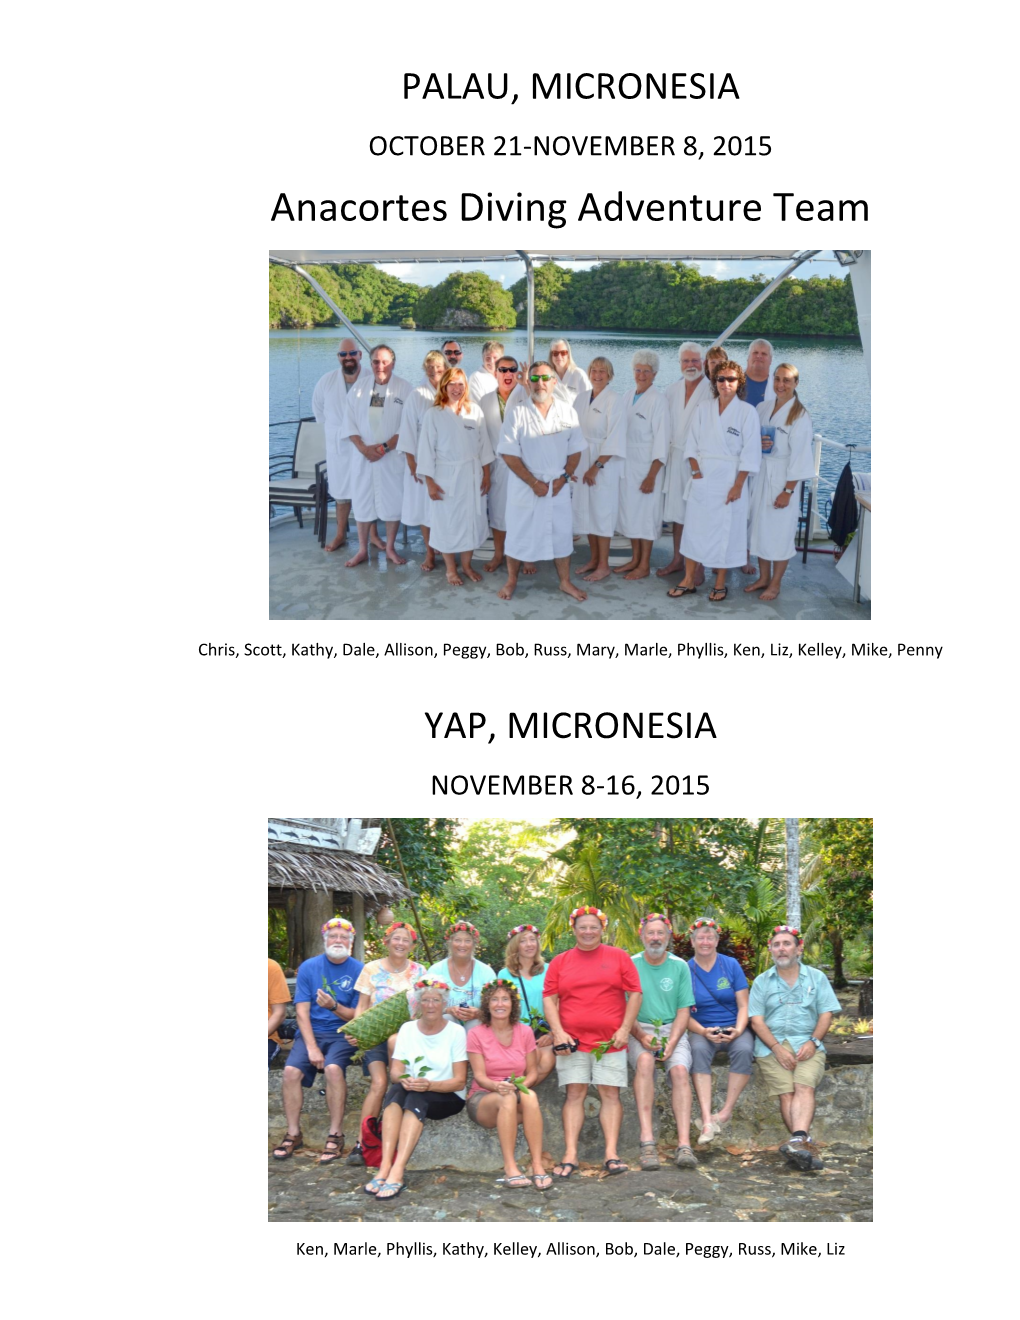 Anacortes Diving Adventure Team